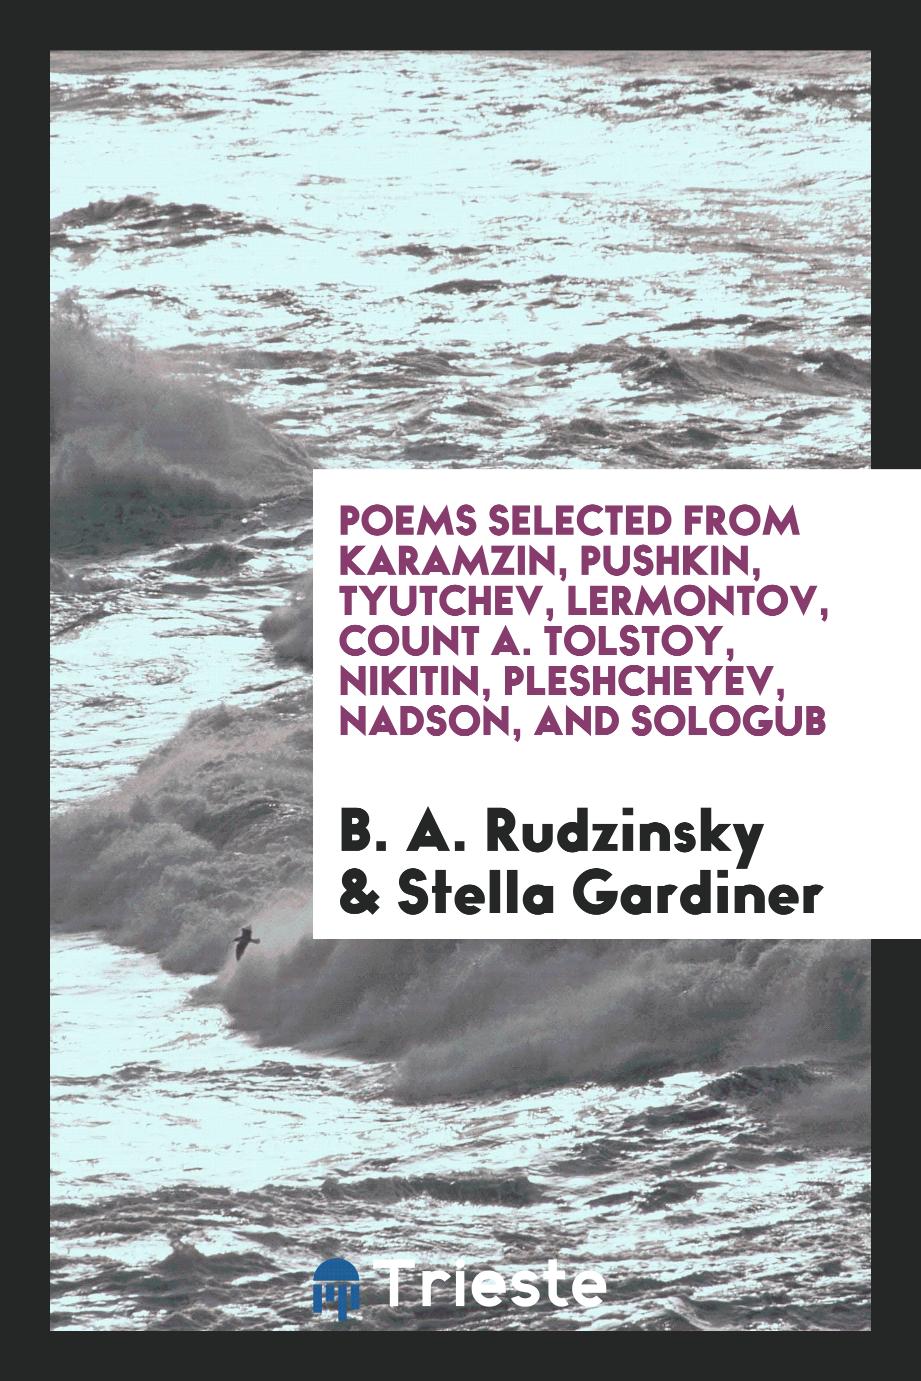 Poems selected from Karamzin, Pushkin, Tyutchev, Lermontov, Count A. Tolstoy, Nikitin, Pleshcheyev, Nadson, and Sologub